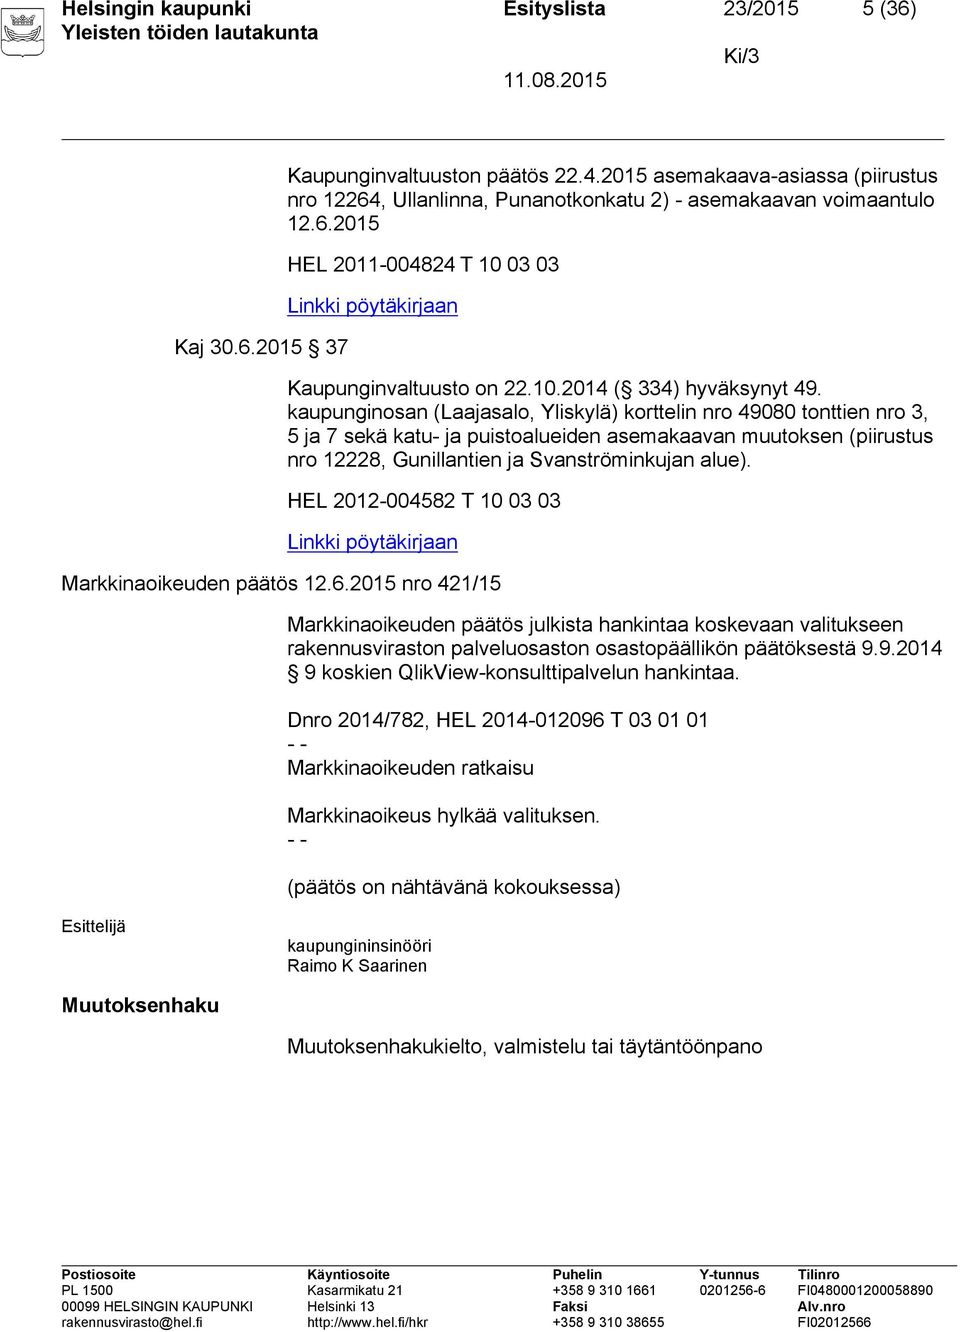 kaupunginosan (Laajasalo, Yliskylä) korttelin nro 49080 tonttien nro 3, 5 ja 7 sekä katu- ja puistoalueiden asemakaavan muutoksen (piirustus nro 12228, Gunillantien ja Svanströminkujan alue).